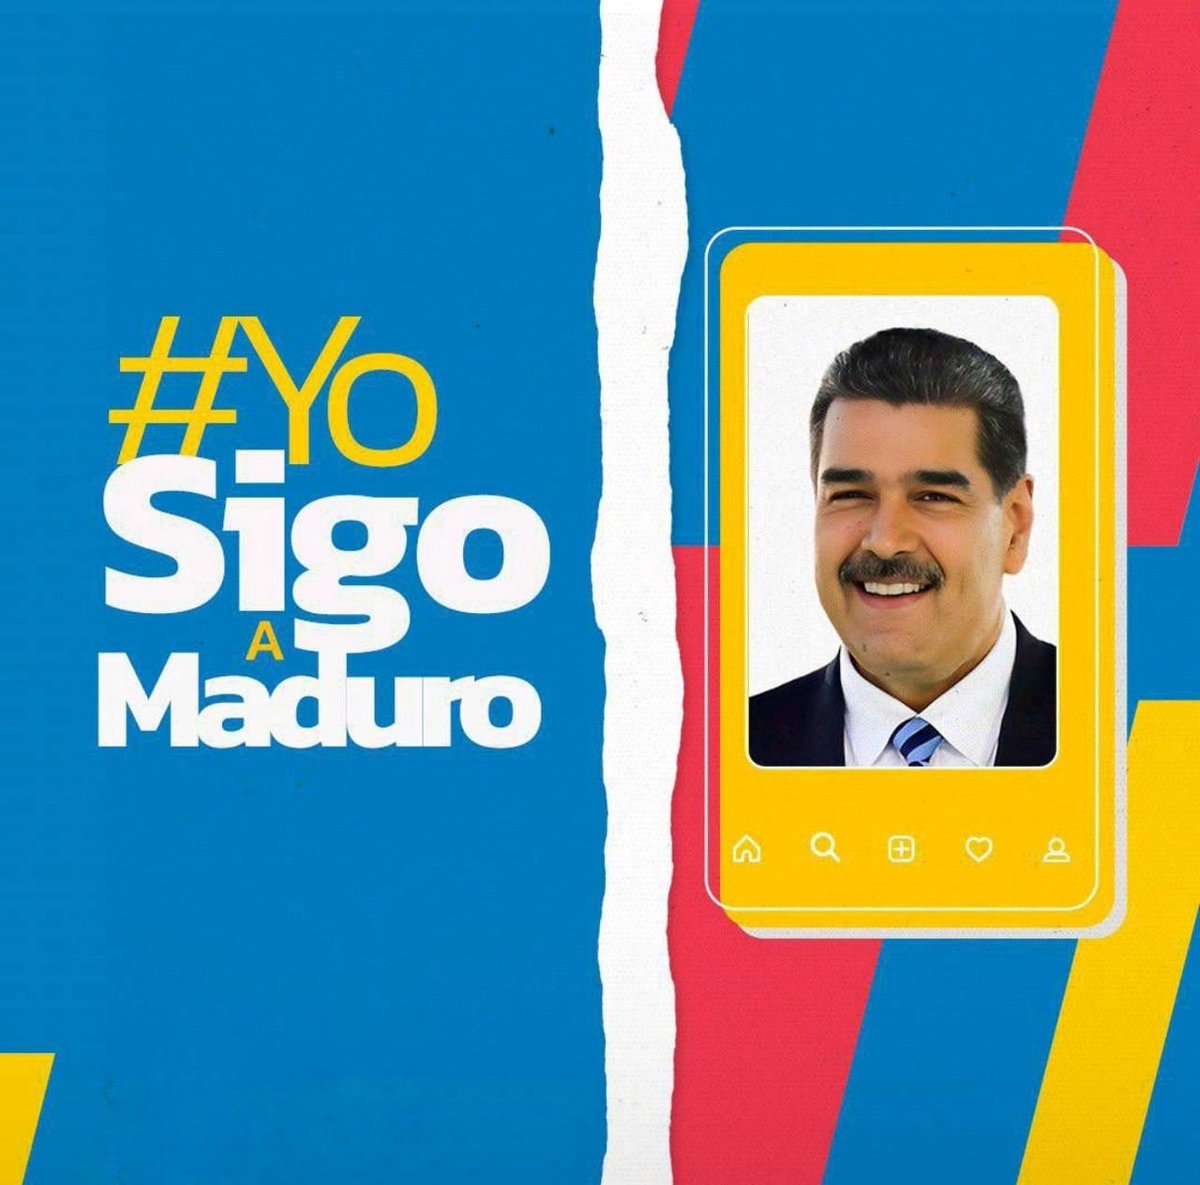 🇻🇪 ¡Vamos a compartir las Redes Sociales de nuestro presidente @NicolasMaduro y decir todos juntos #YoSigoAMaduro! 👇🏼👇🏼👇🏻 ❤️ Me gusta: si lo sigues. 🔄 Repost: si interactúas con el. 💬 Comenta: si ya dijiste #YoSigoAMaduro